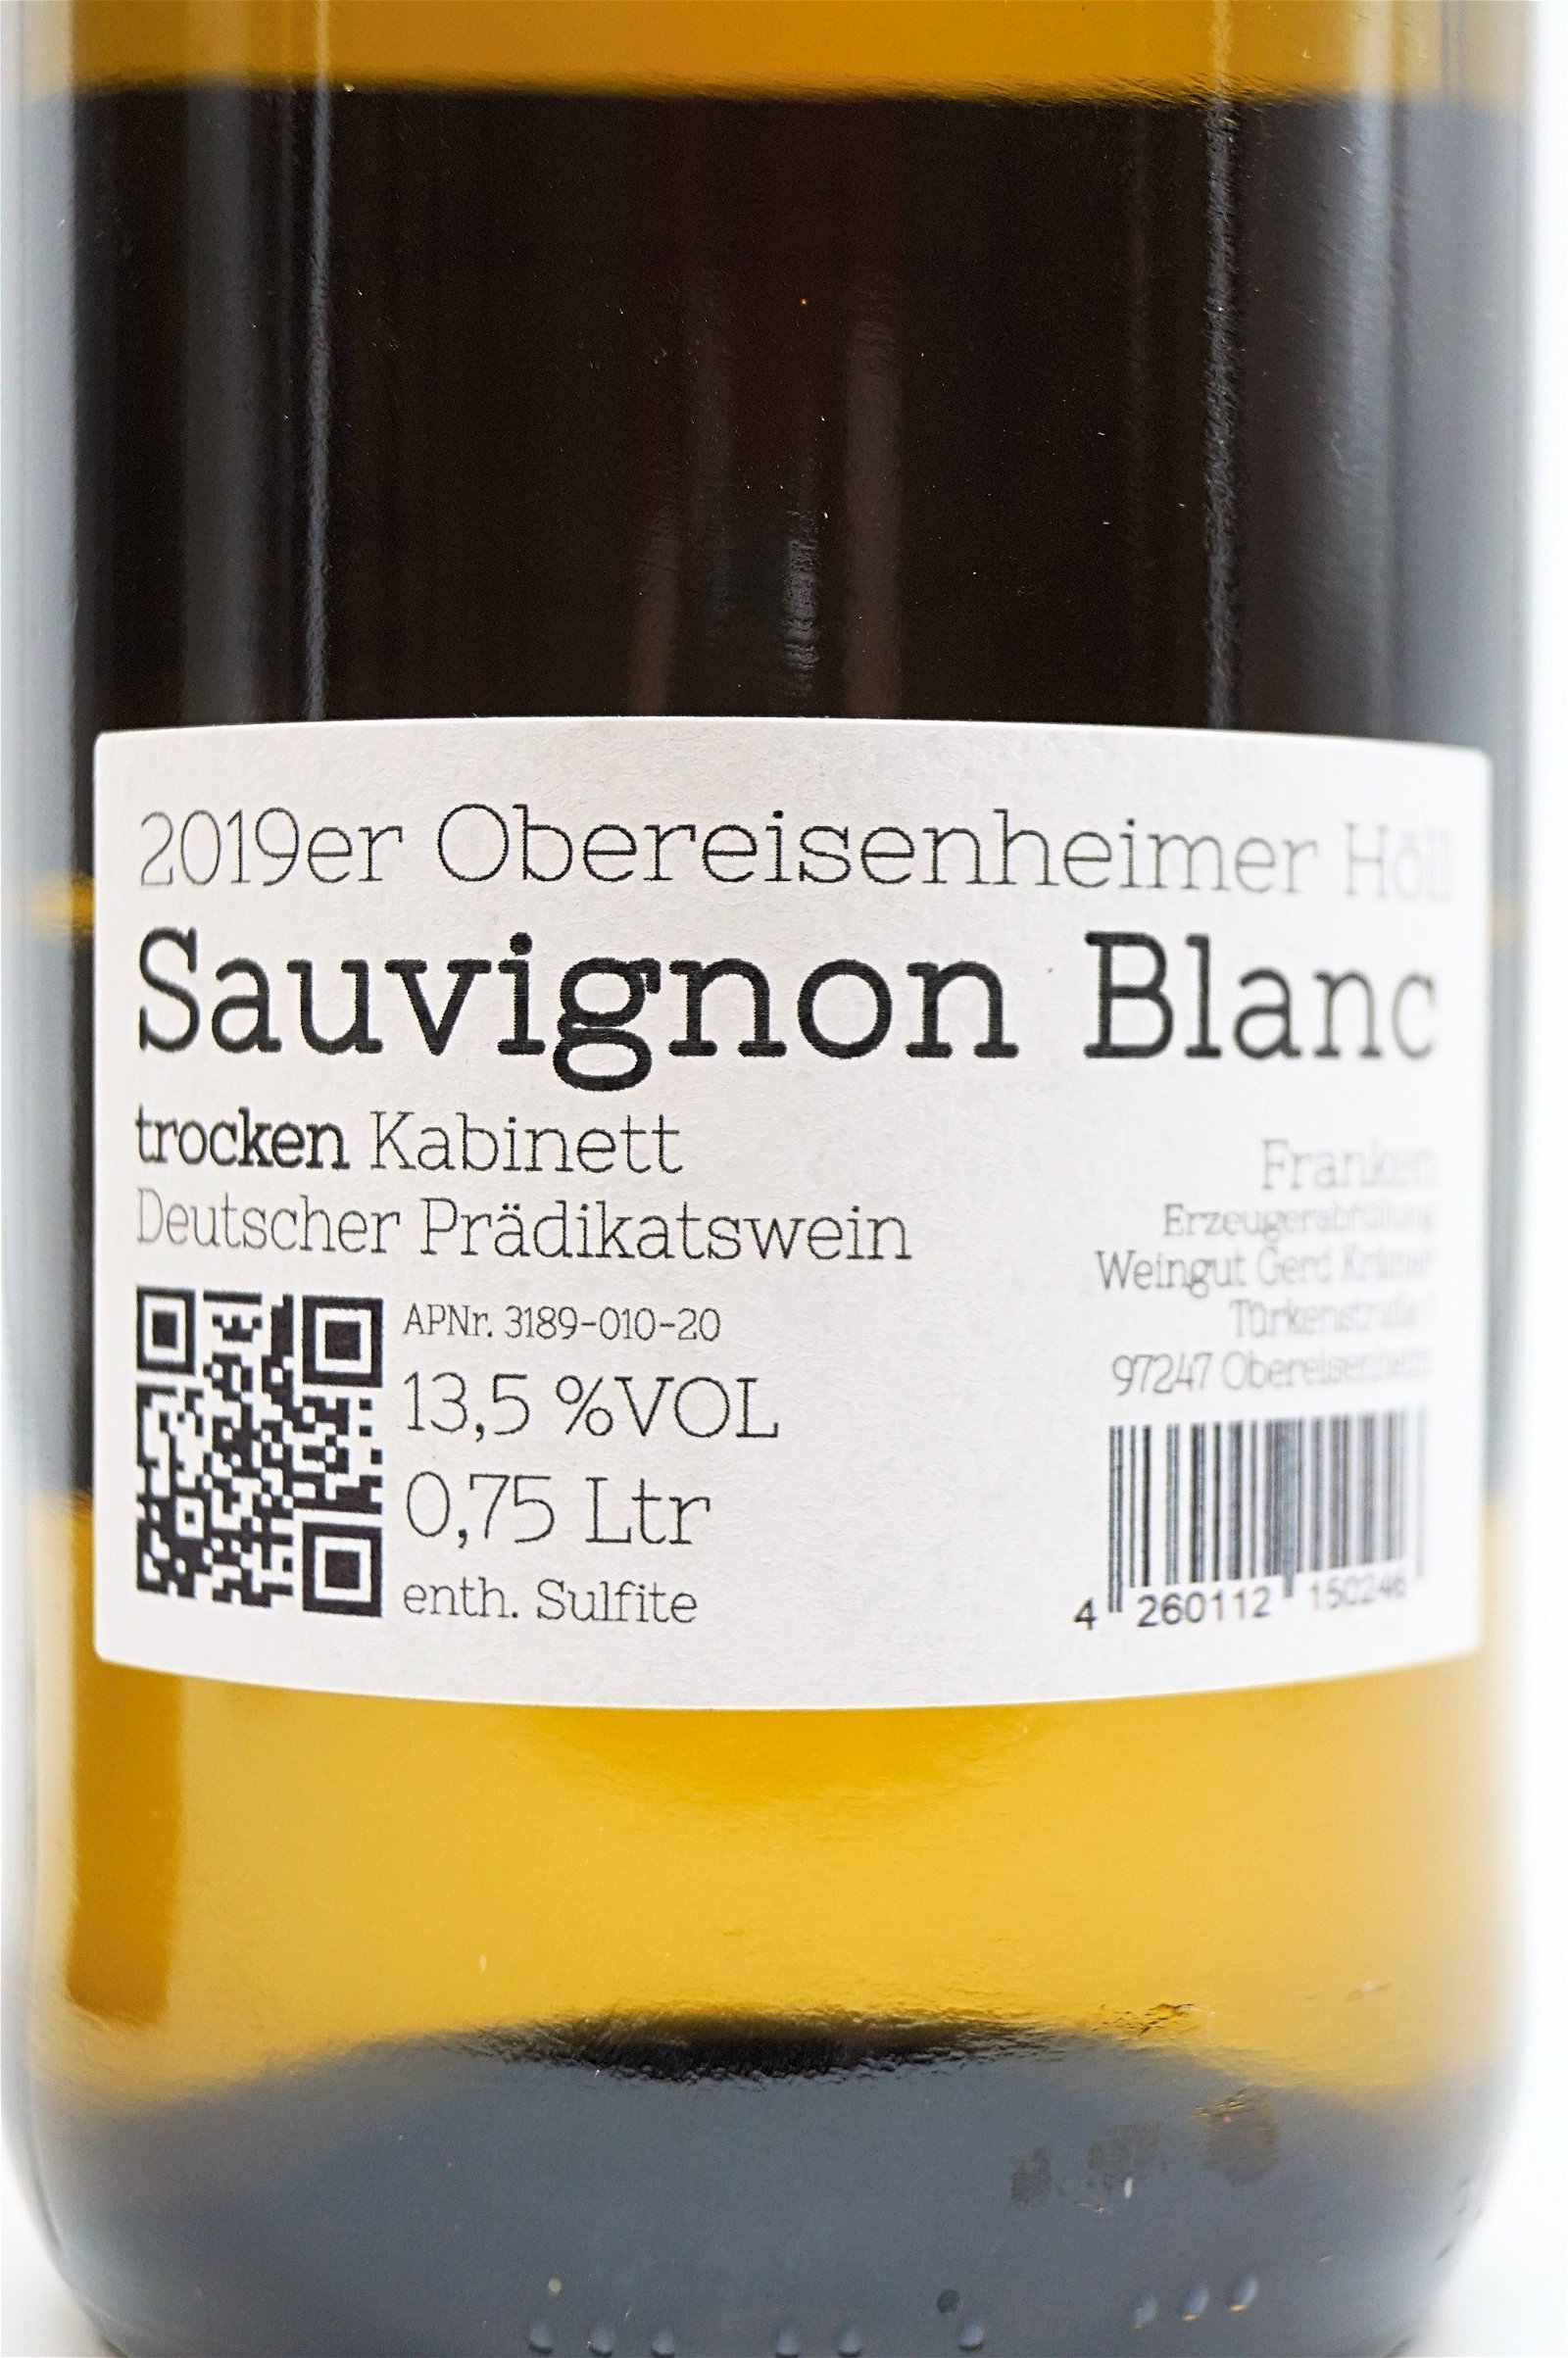 Weingut Krämer Sauvignon Blanc Kabinett 2019